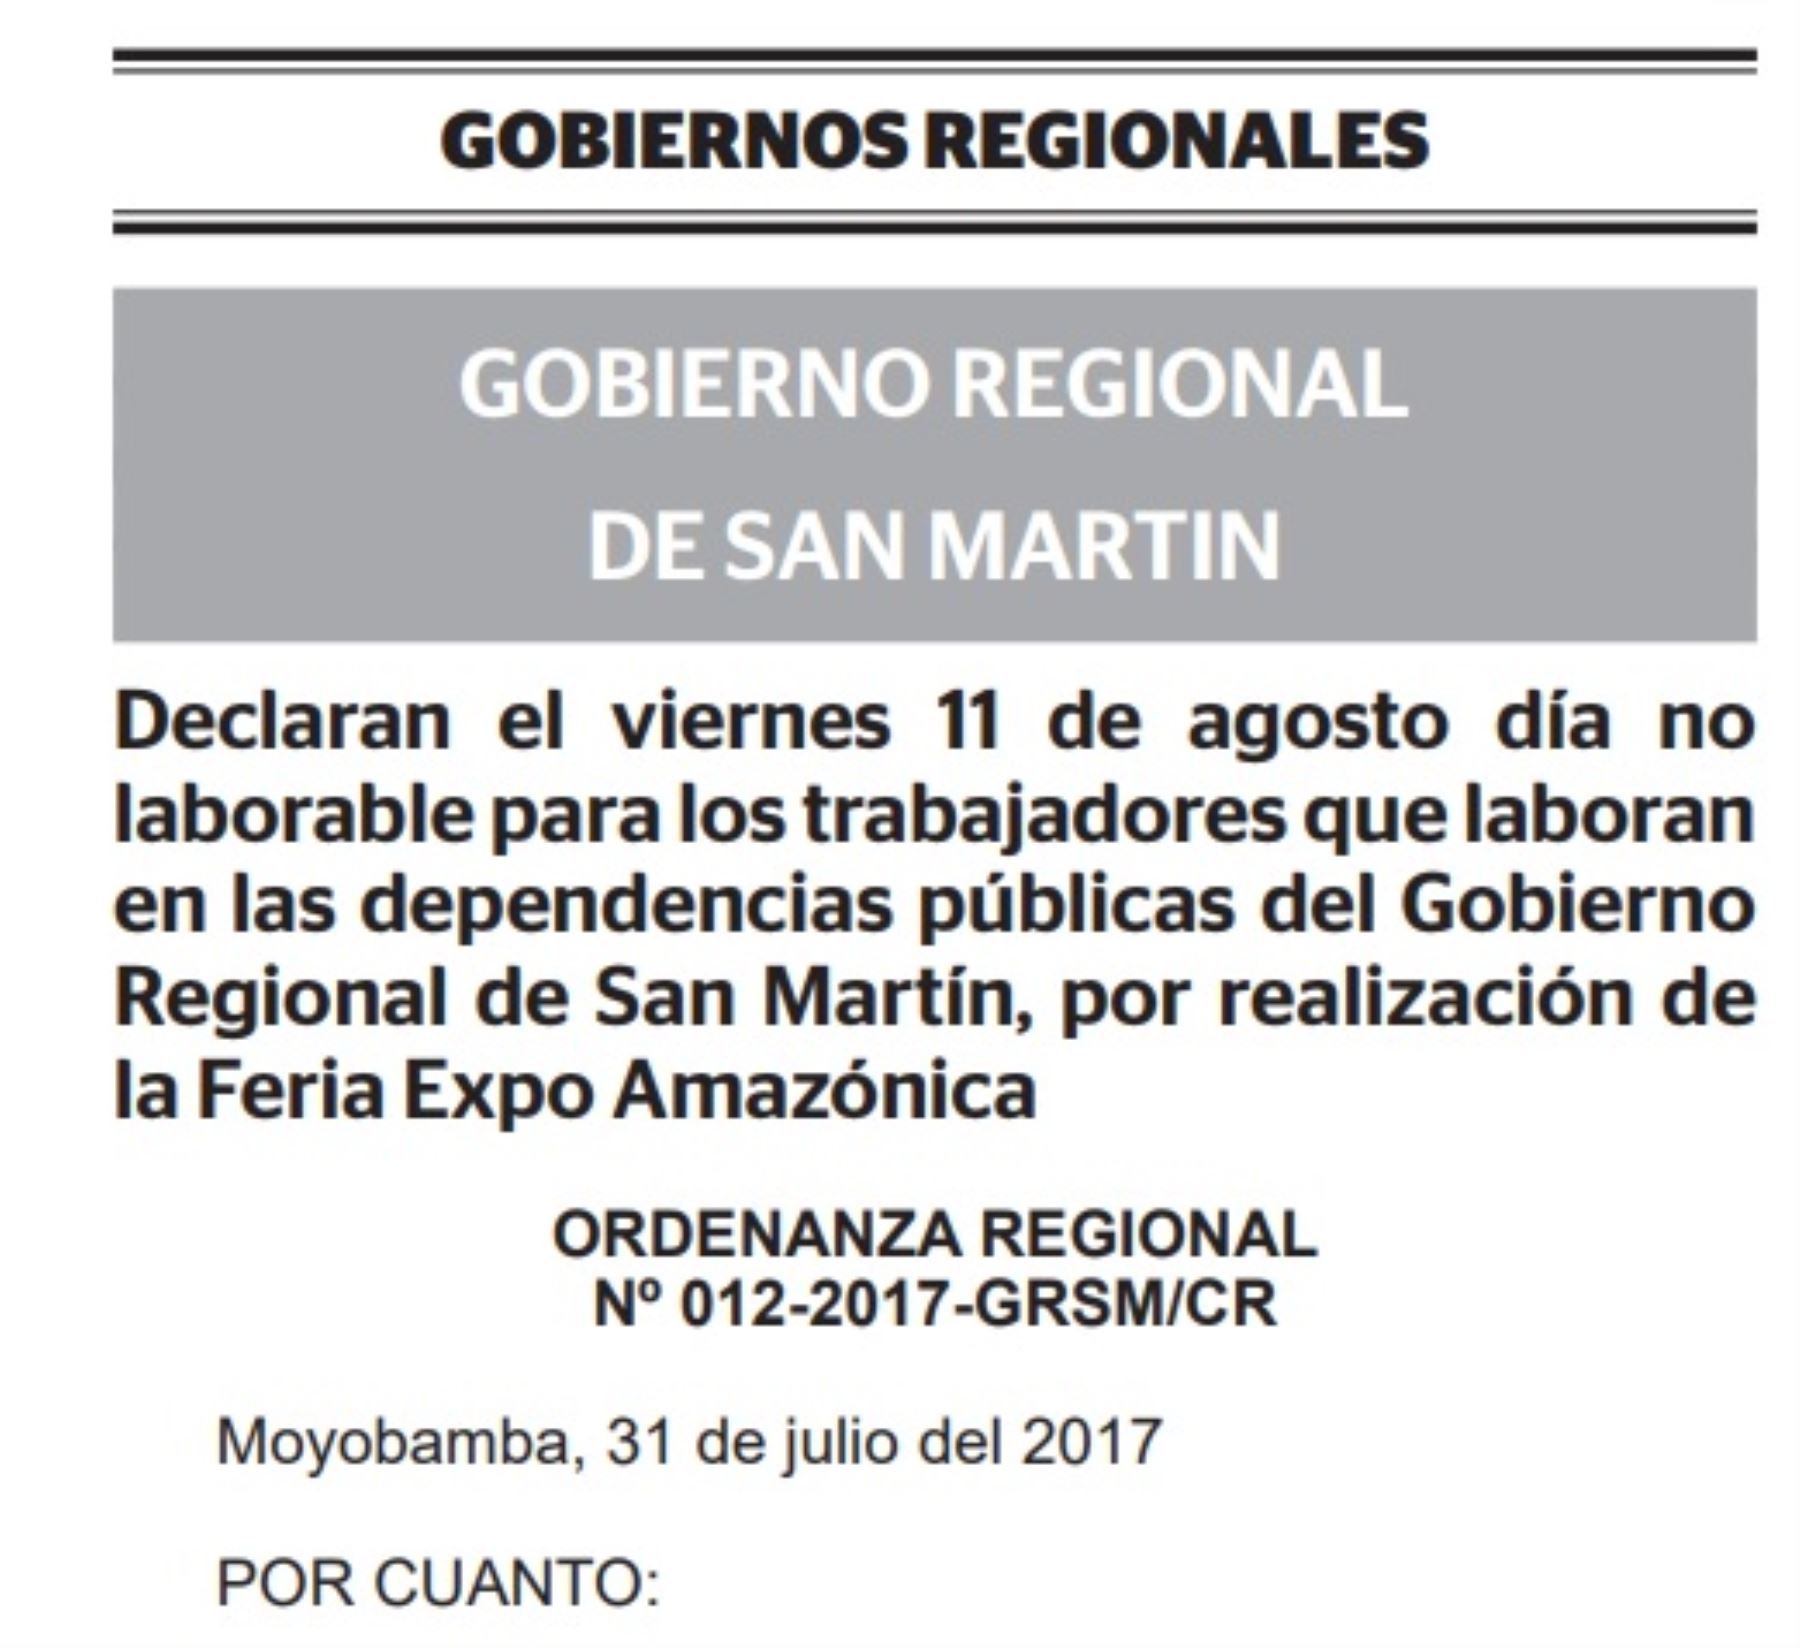 El gobierno regional de San Martín dispuso que el próximo viernes 11 de agosto será día no laborable para los trabajadores de las dependencias públicas, debido a la realización de la feria Expo Amazónica 2017 que contribuirá al desarrollo y crecimiento de la economía regional.